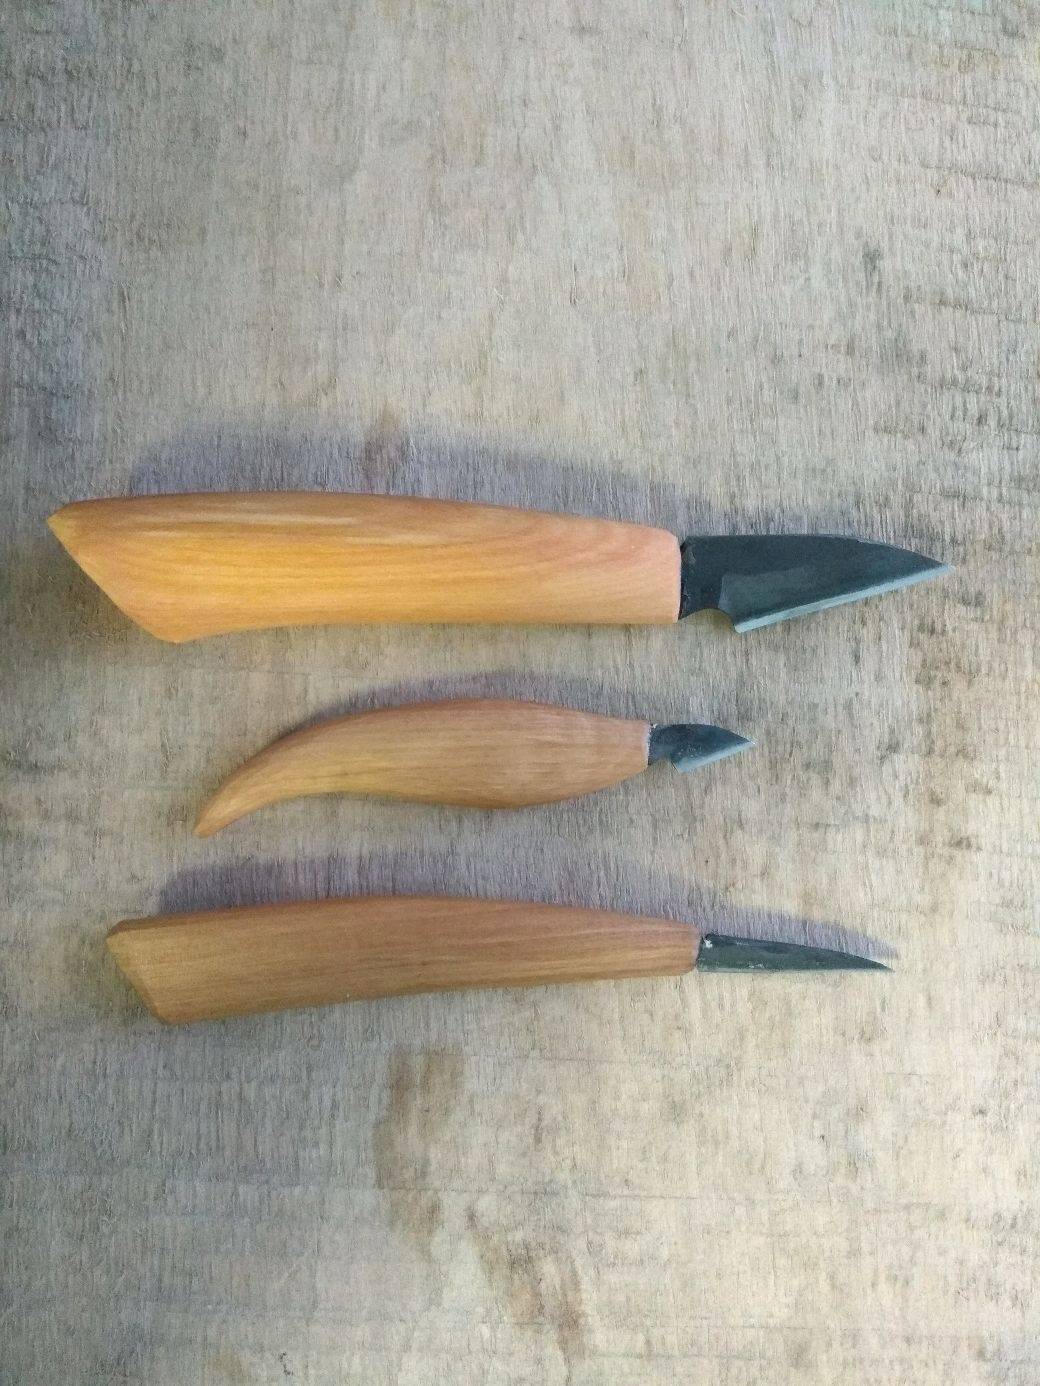 Кованный нож для резьбы по дереву из пружины подвески